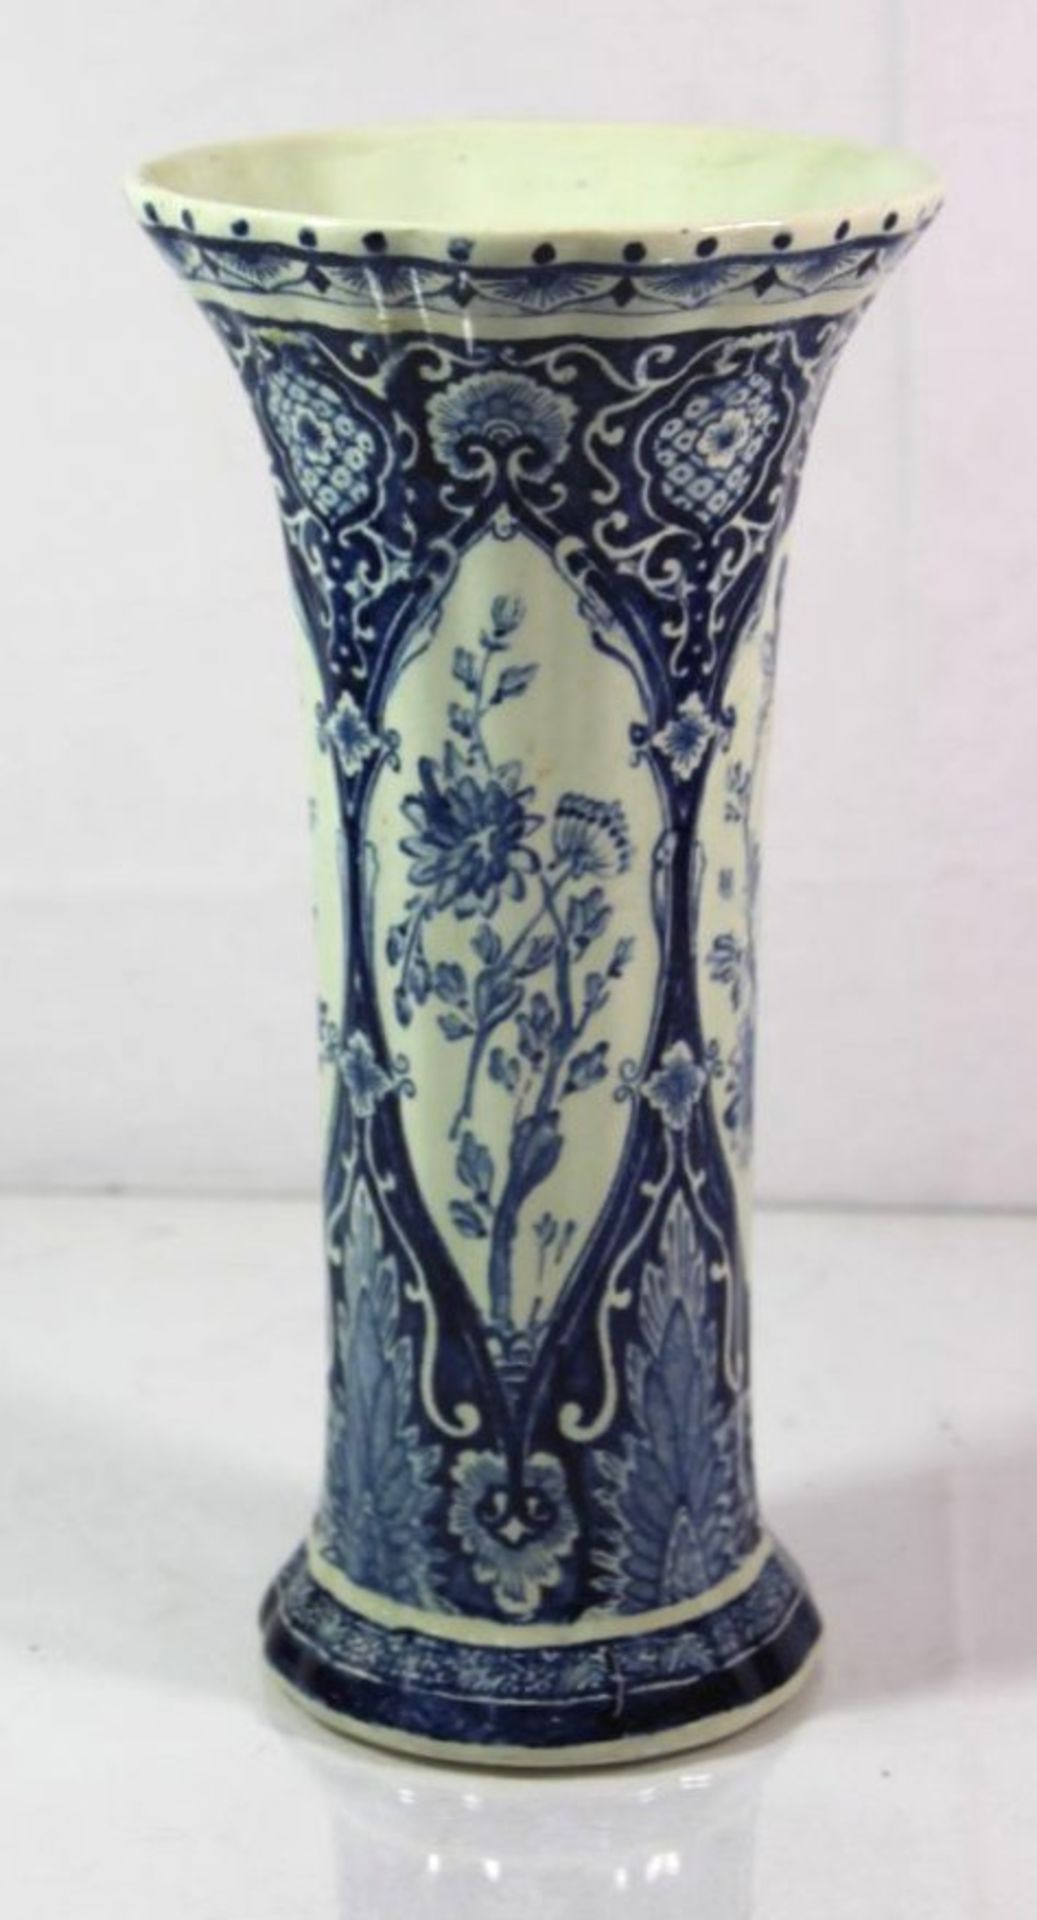 hohe Vase, Boch, blaues Dekor, H-26,5cm.- - -22.61 % buyer's premium on the hammer priceVAT margin